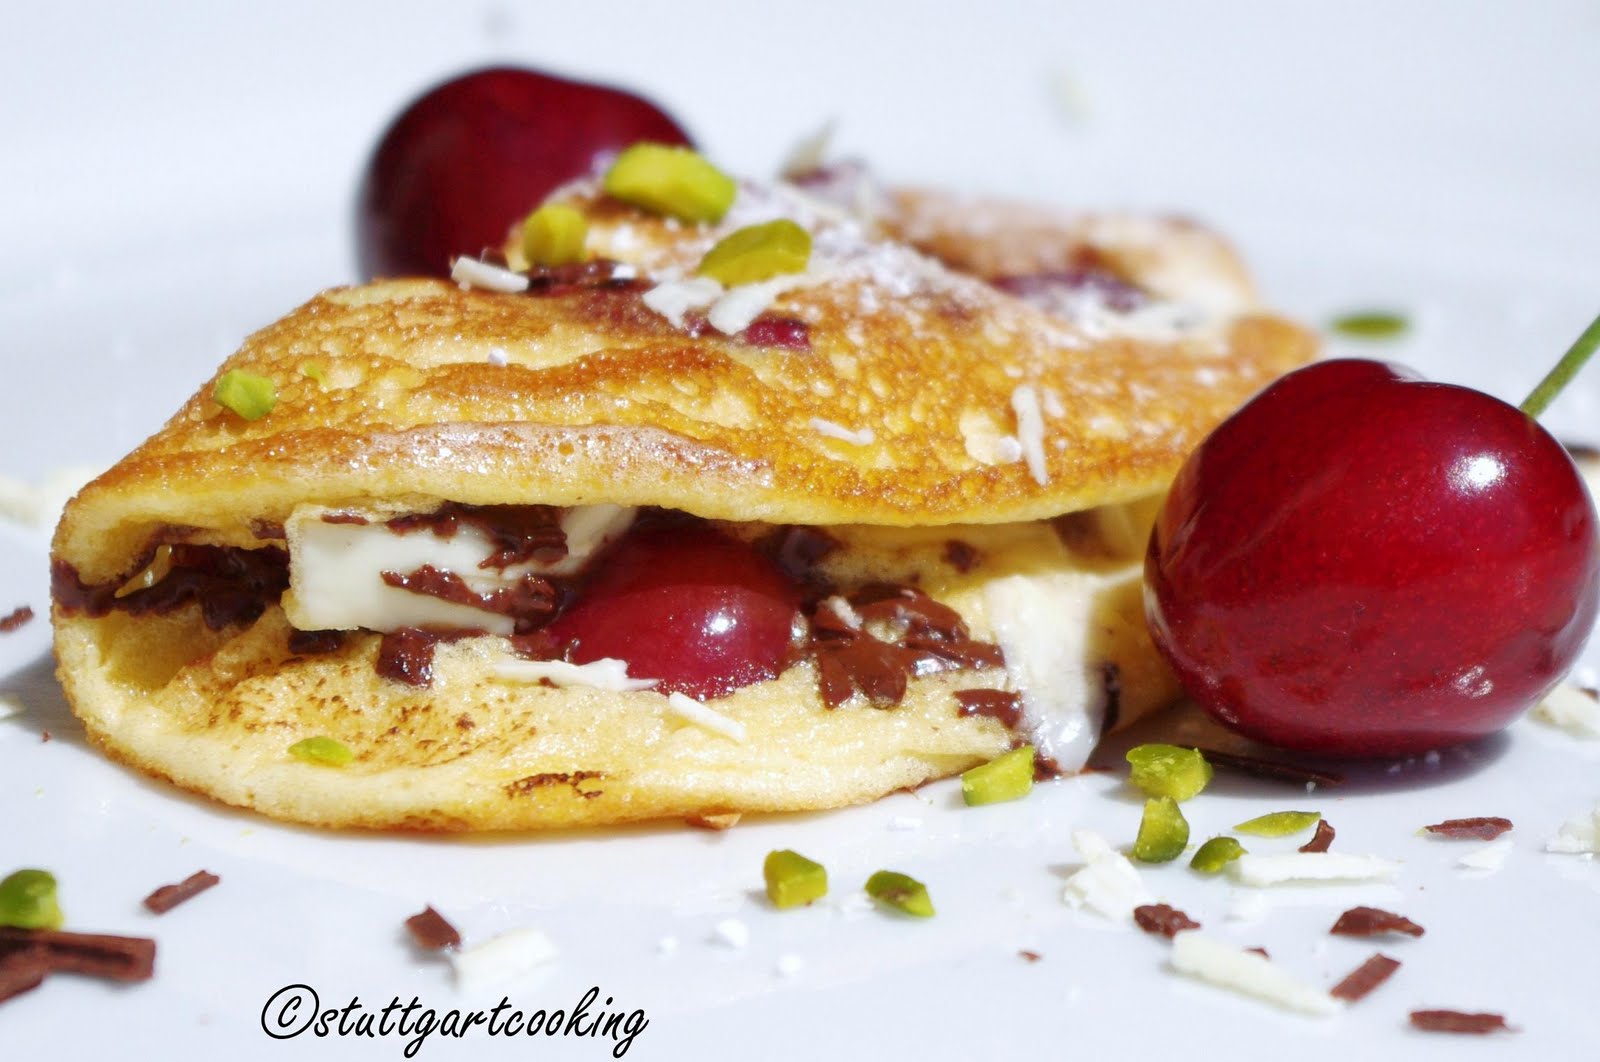 stuttgartcooking: Biskuit-Omelette mit Kirschen und zweierlei Schokolade